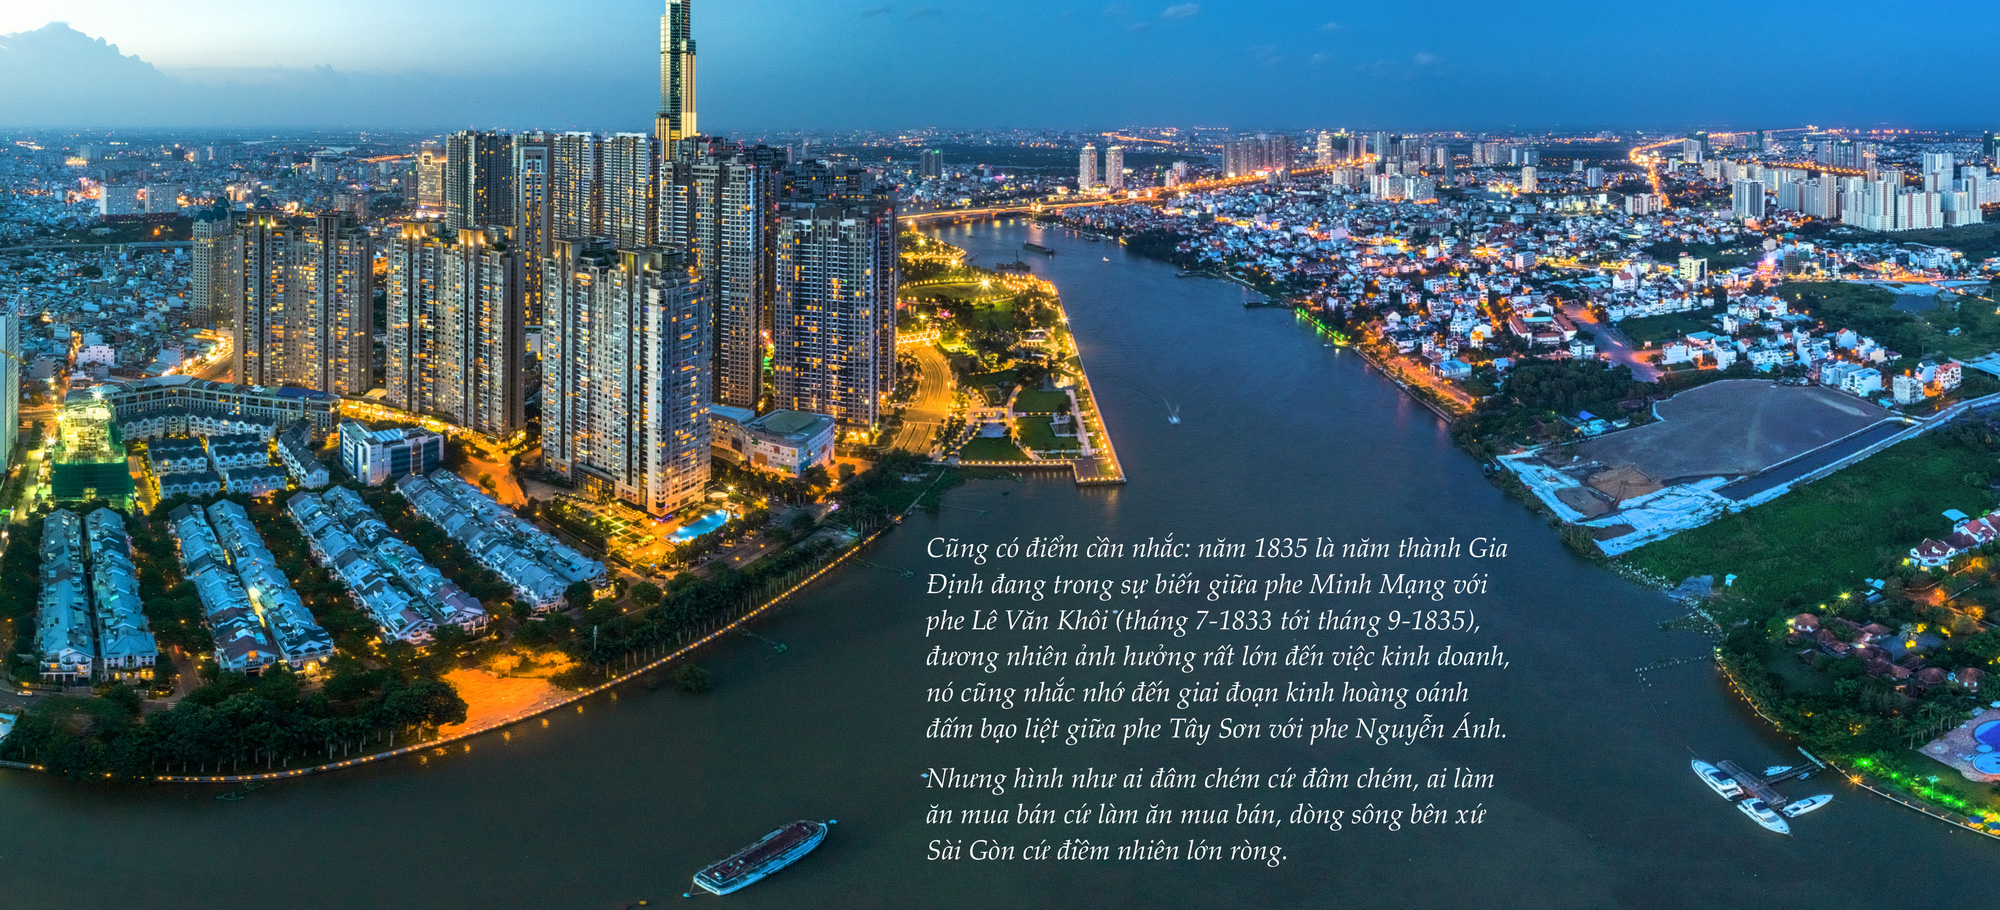 Sông Sài Gòn chảy theo dòng lịch sử - Ảnh 8.